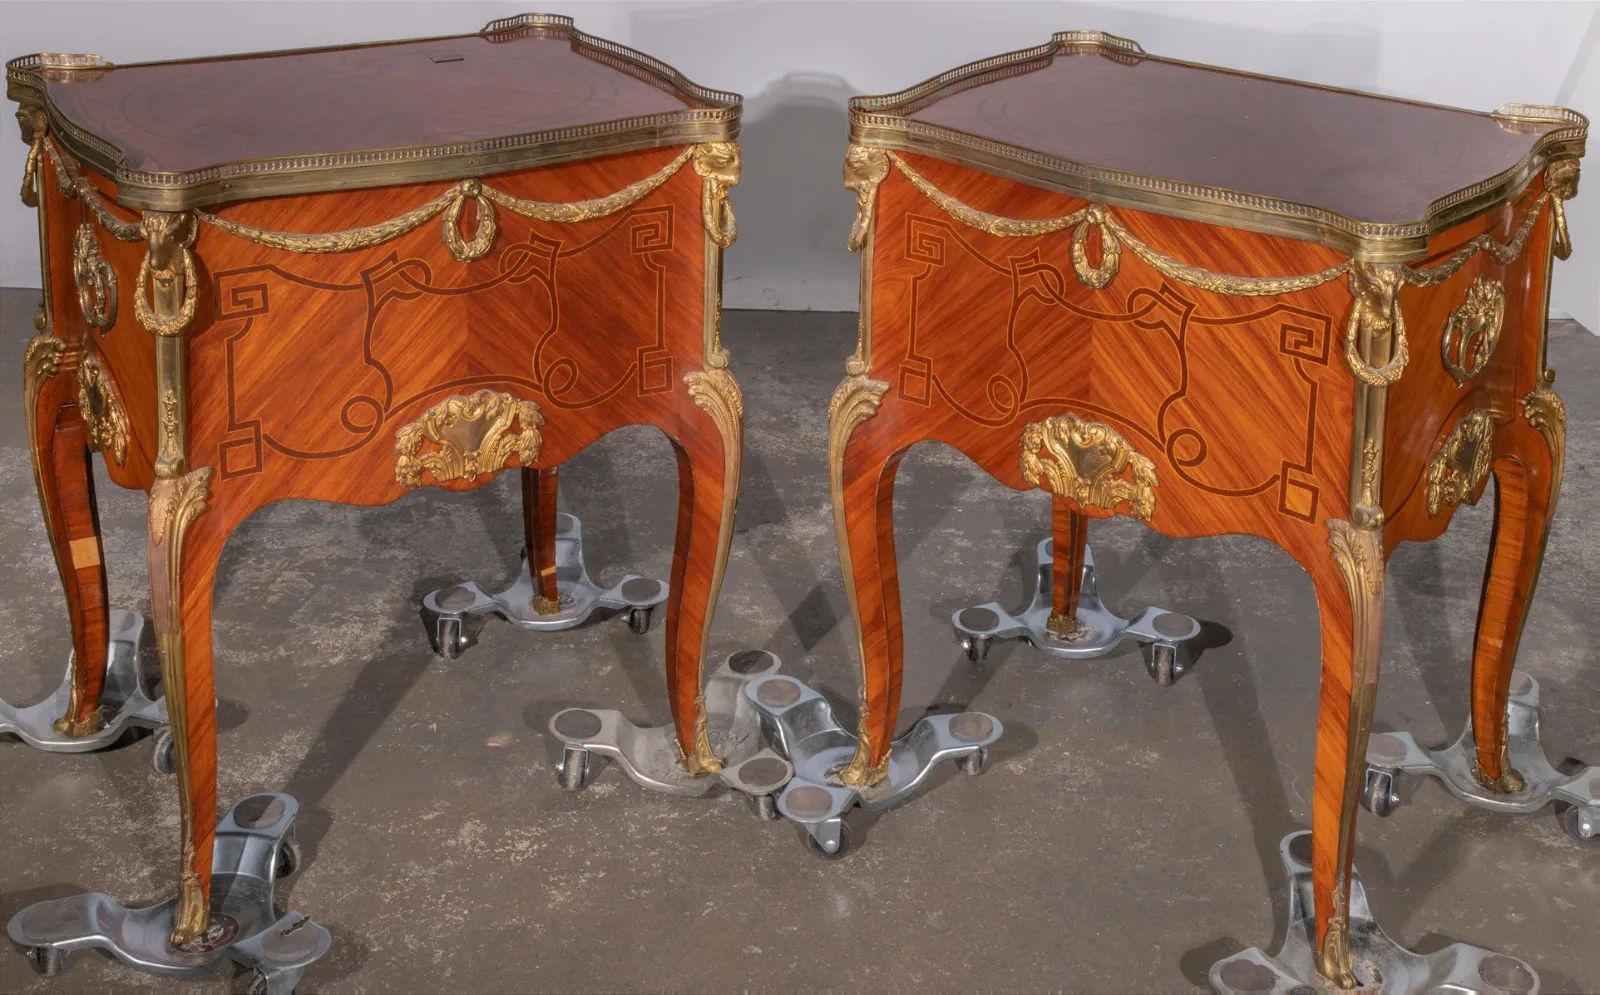 Paar Beistellschränke nach dem Originalmodell von Jean-Francois Oeben (1721-1763), Kunsttischler der französischen Aristokratie, u.a. von Madame de Pompadour, der Mätresse Ludwigs XV., mit rechteckiger Form, serpentinenförmigen Beinen,